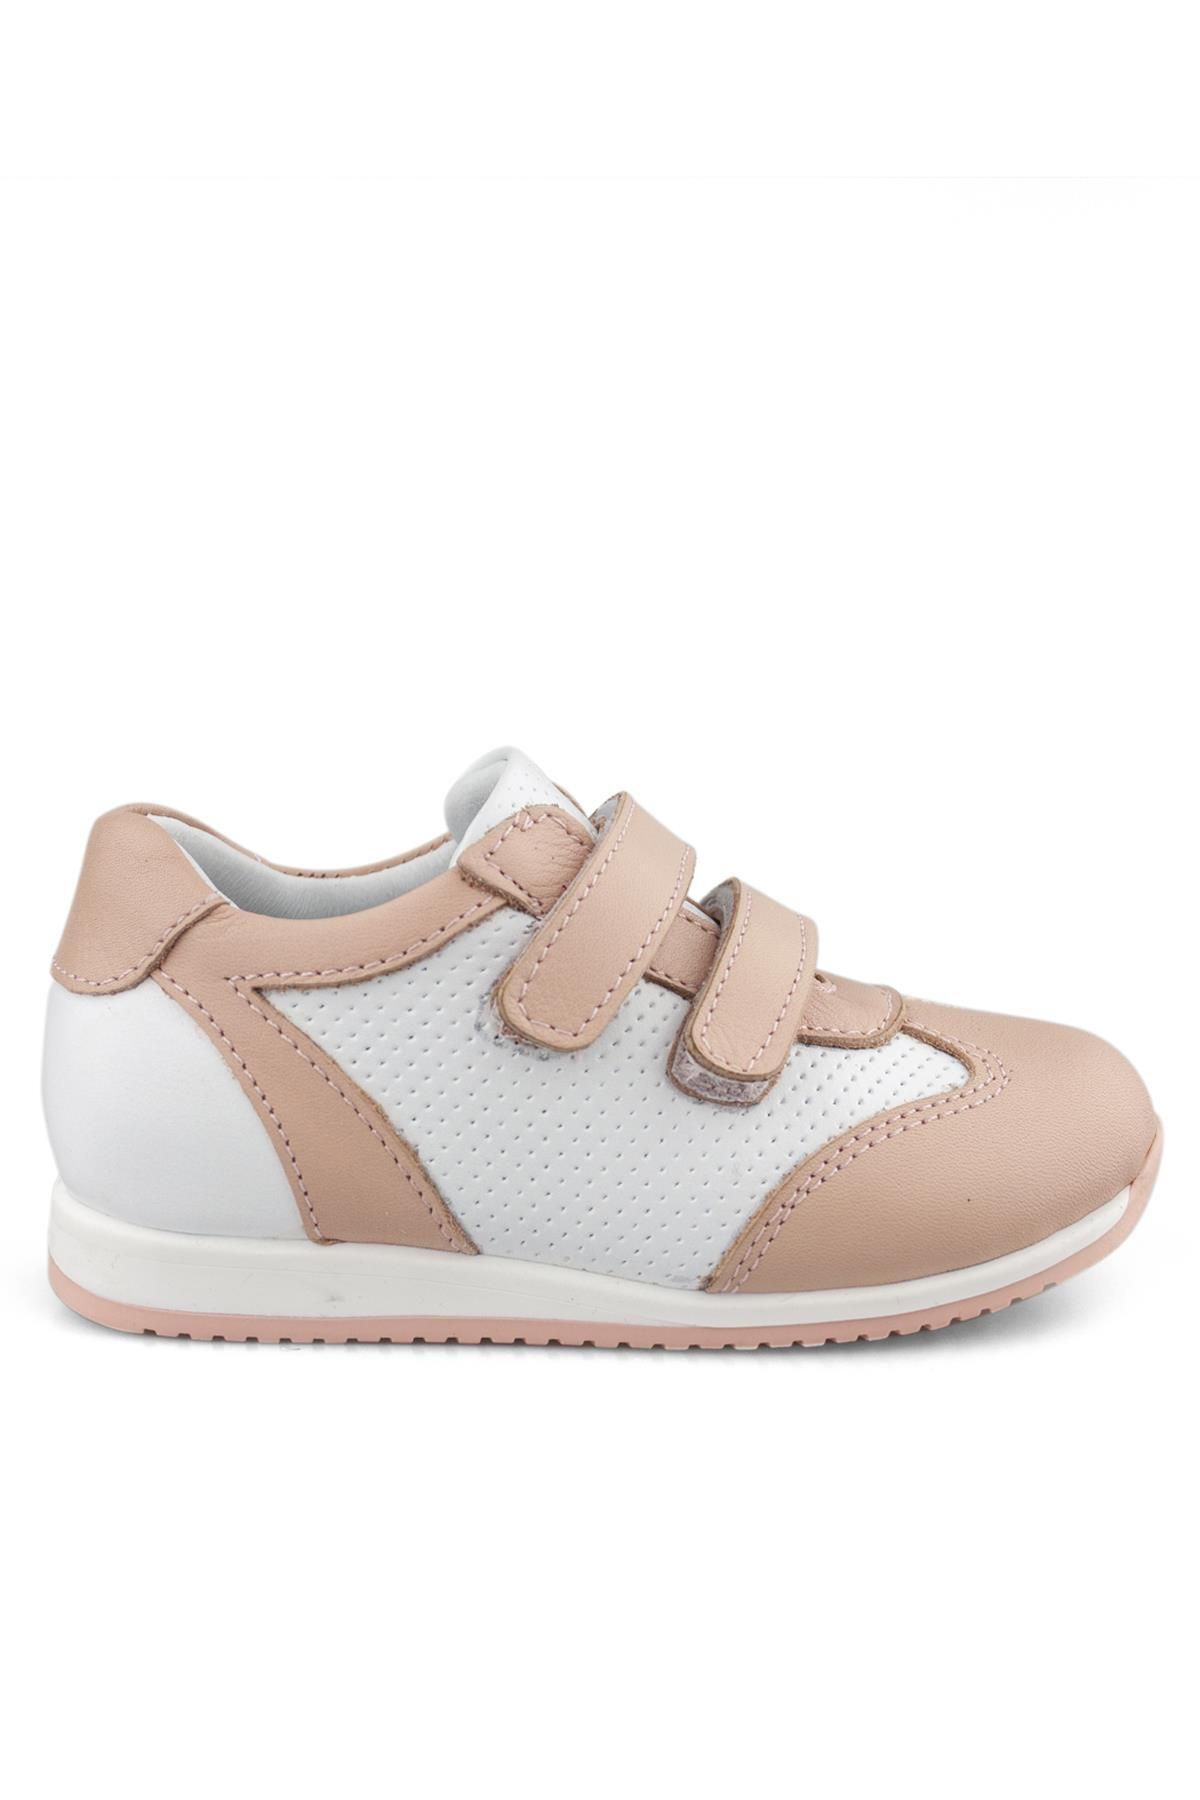 Cici Bebe Ayakkabı Hakiki Deri Pudra Beyaz Kız Çocuk Günlük Spor Ayakkabı